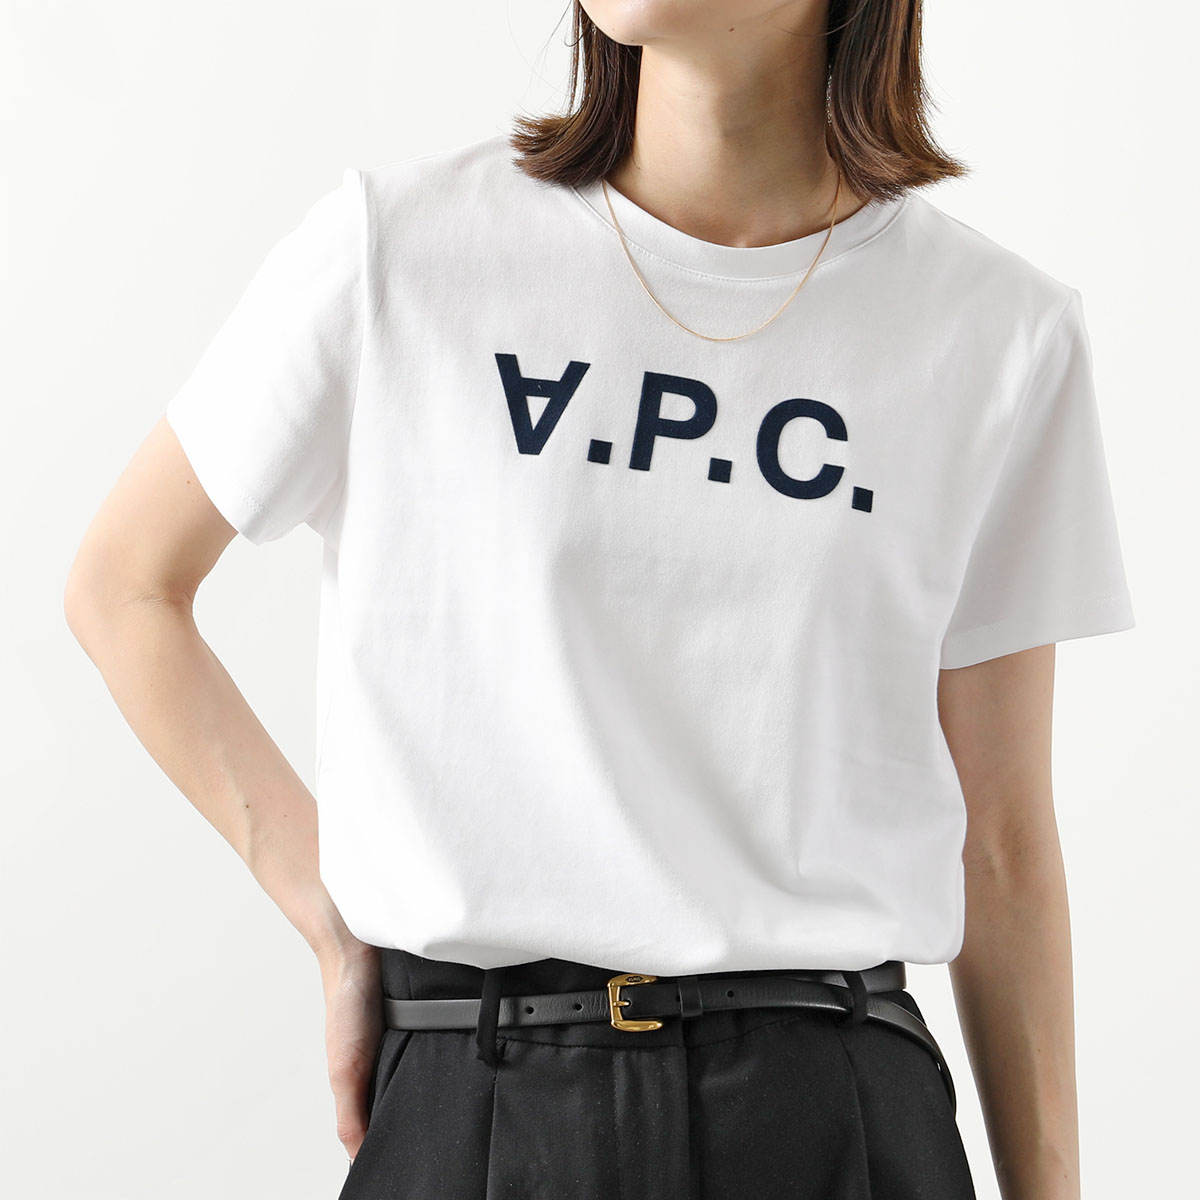 APC A.P.C. アーペーセー COBQX F26588 VPCTシャツ クルーネック 半袖 